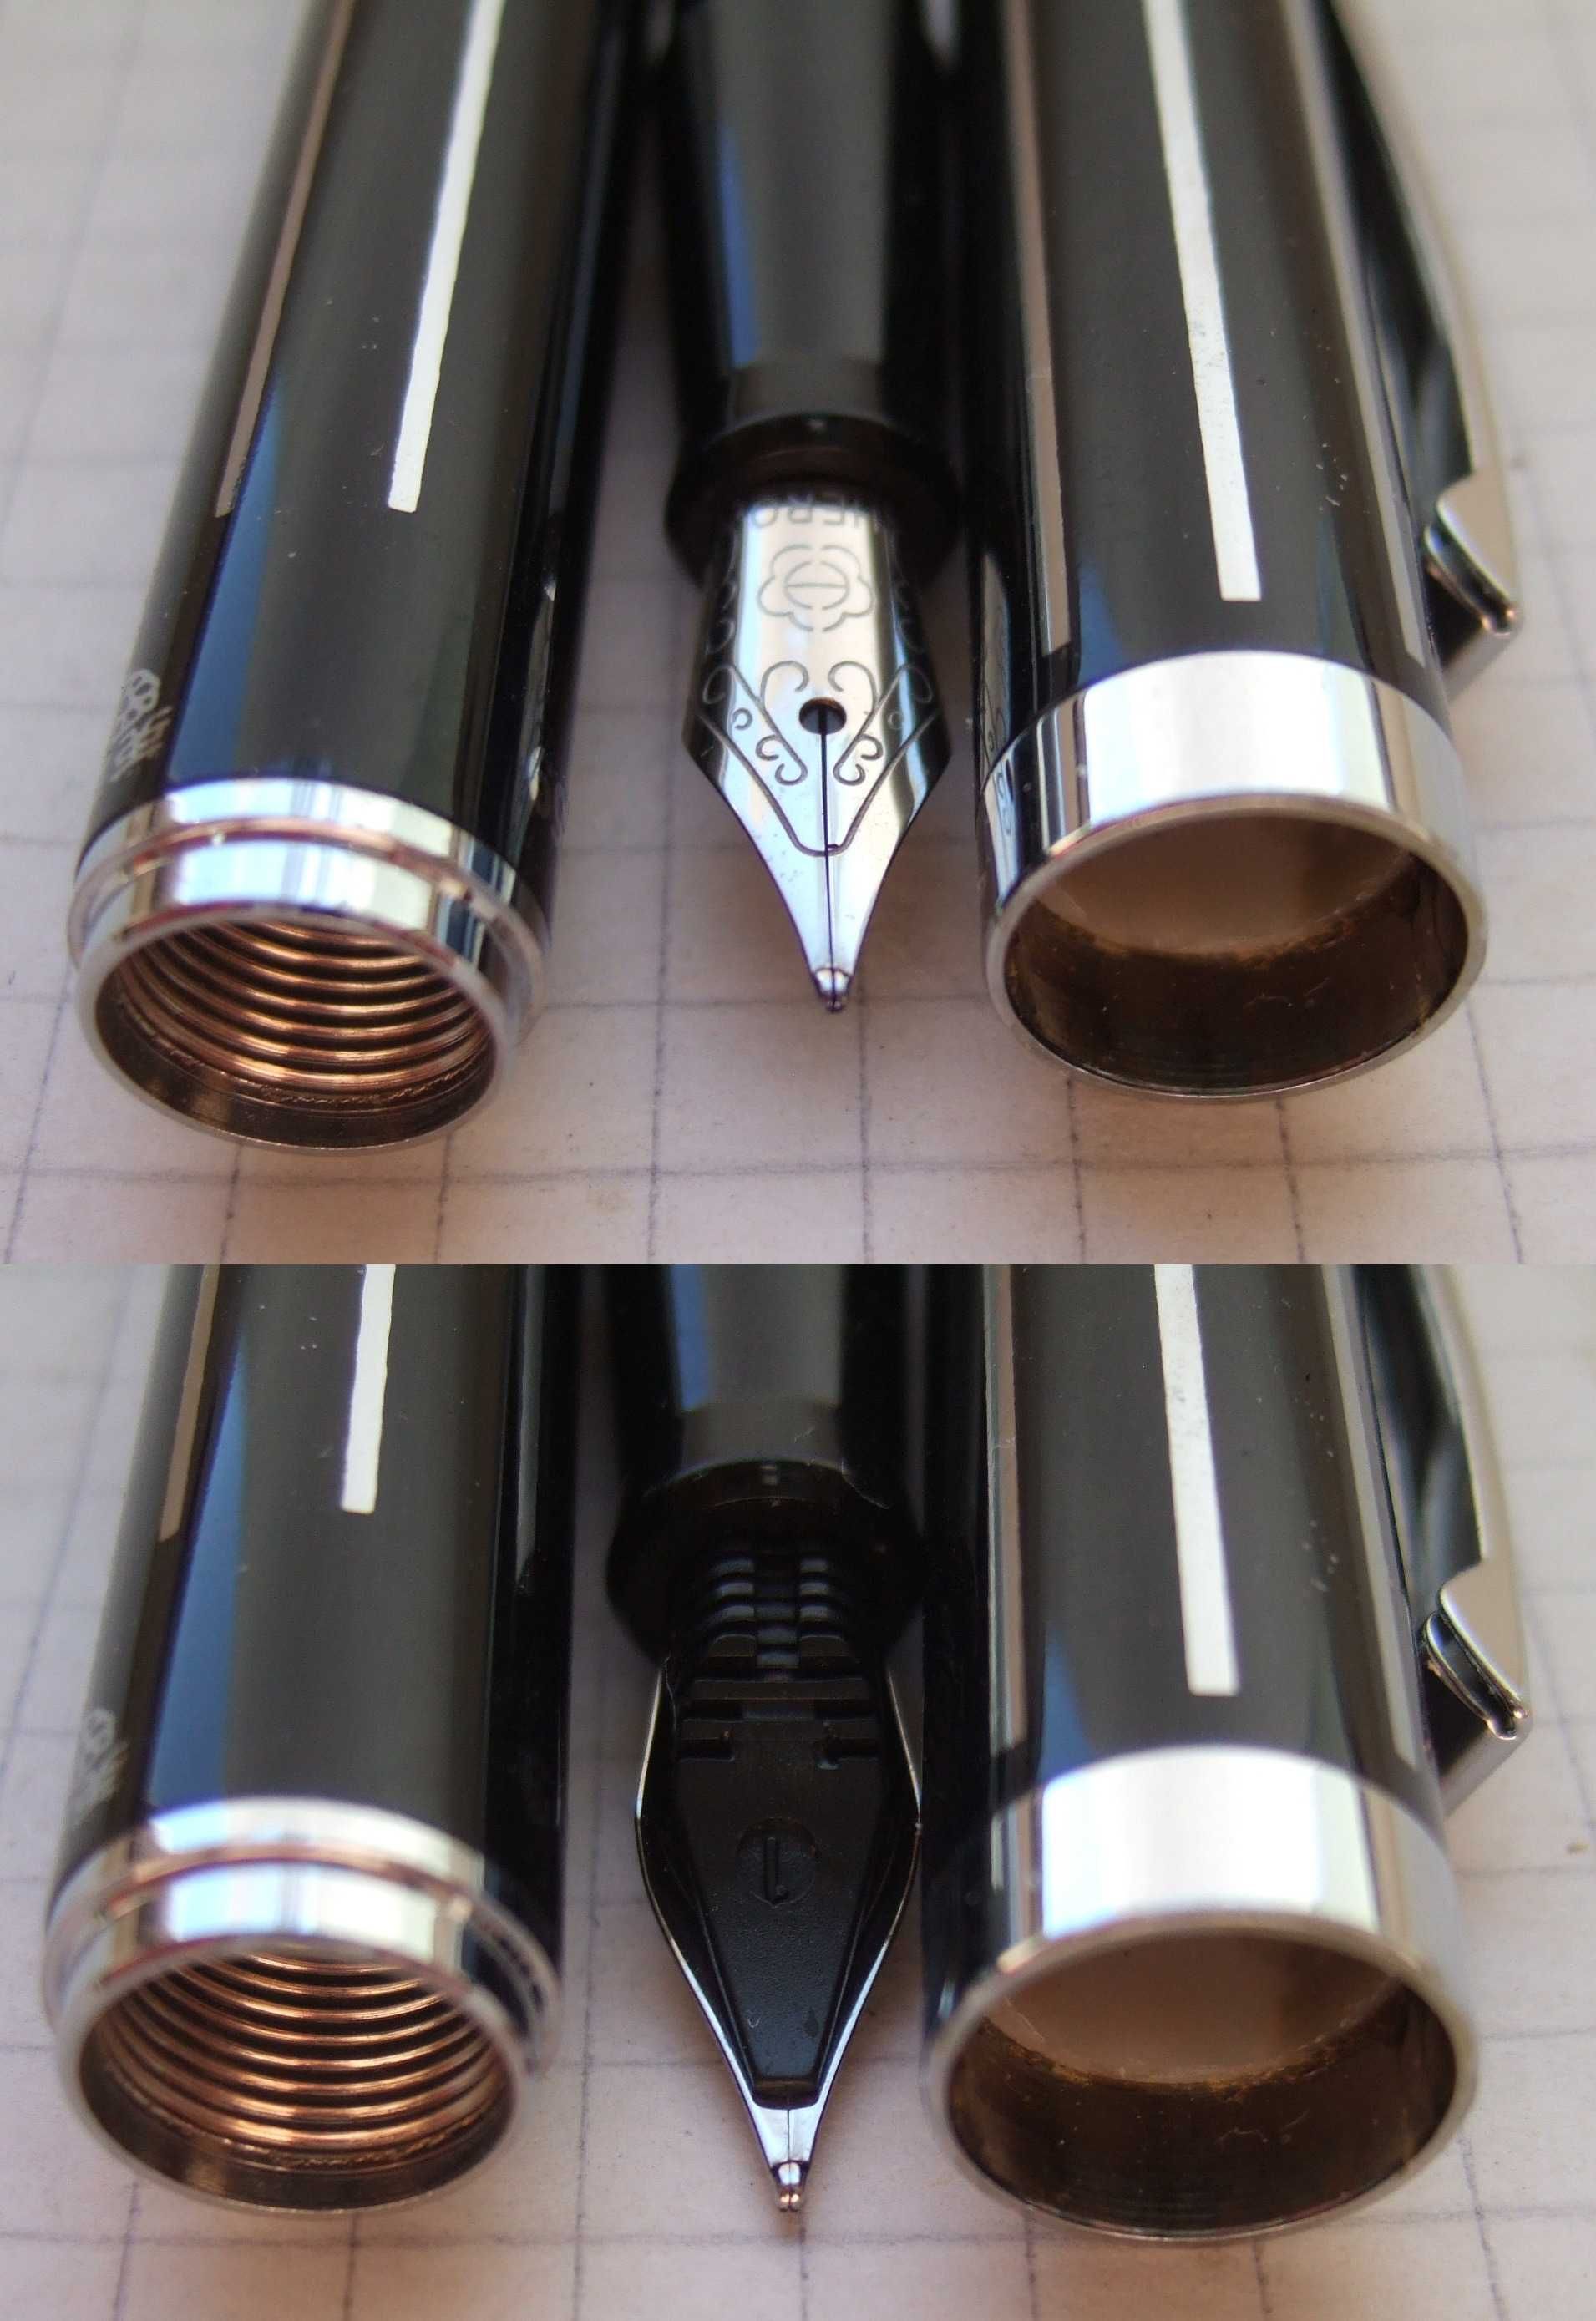 Нова перова ручка Hero-759 повністю з металу. Пише м'яко та насичено